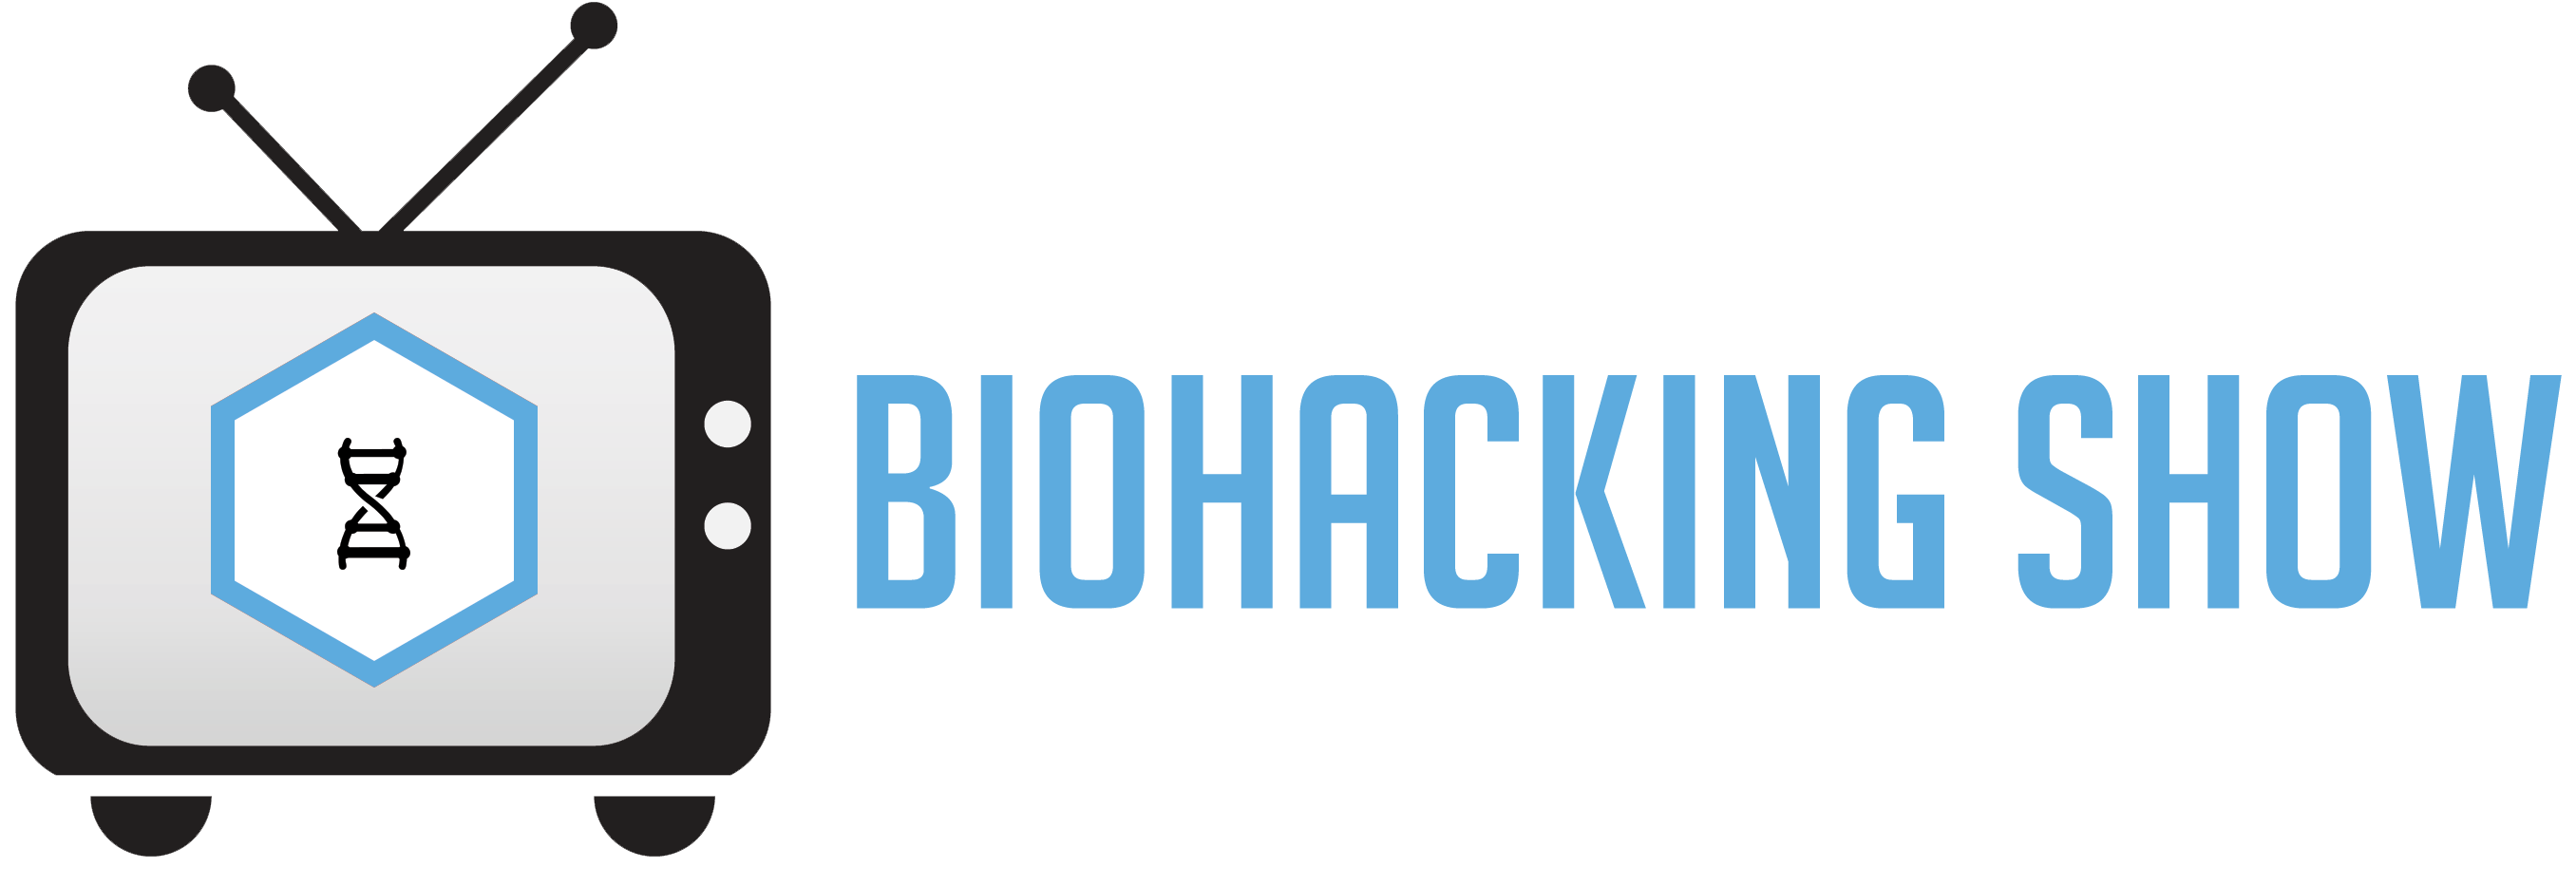 Biohacking Show